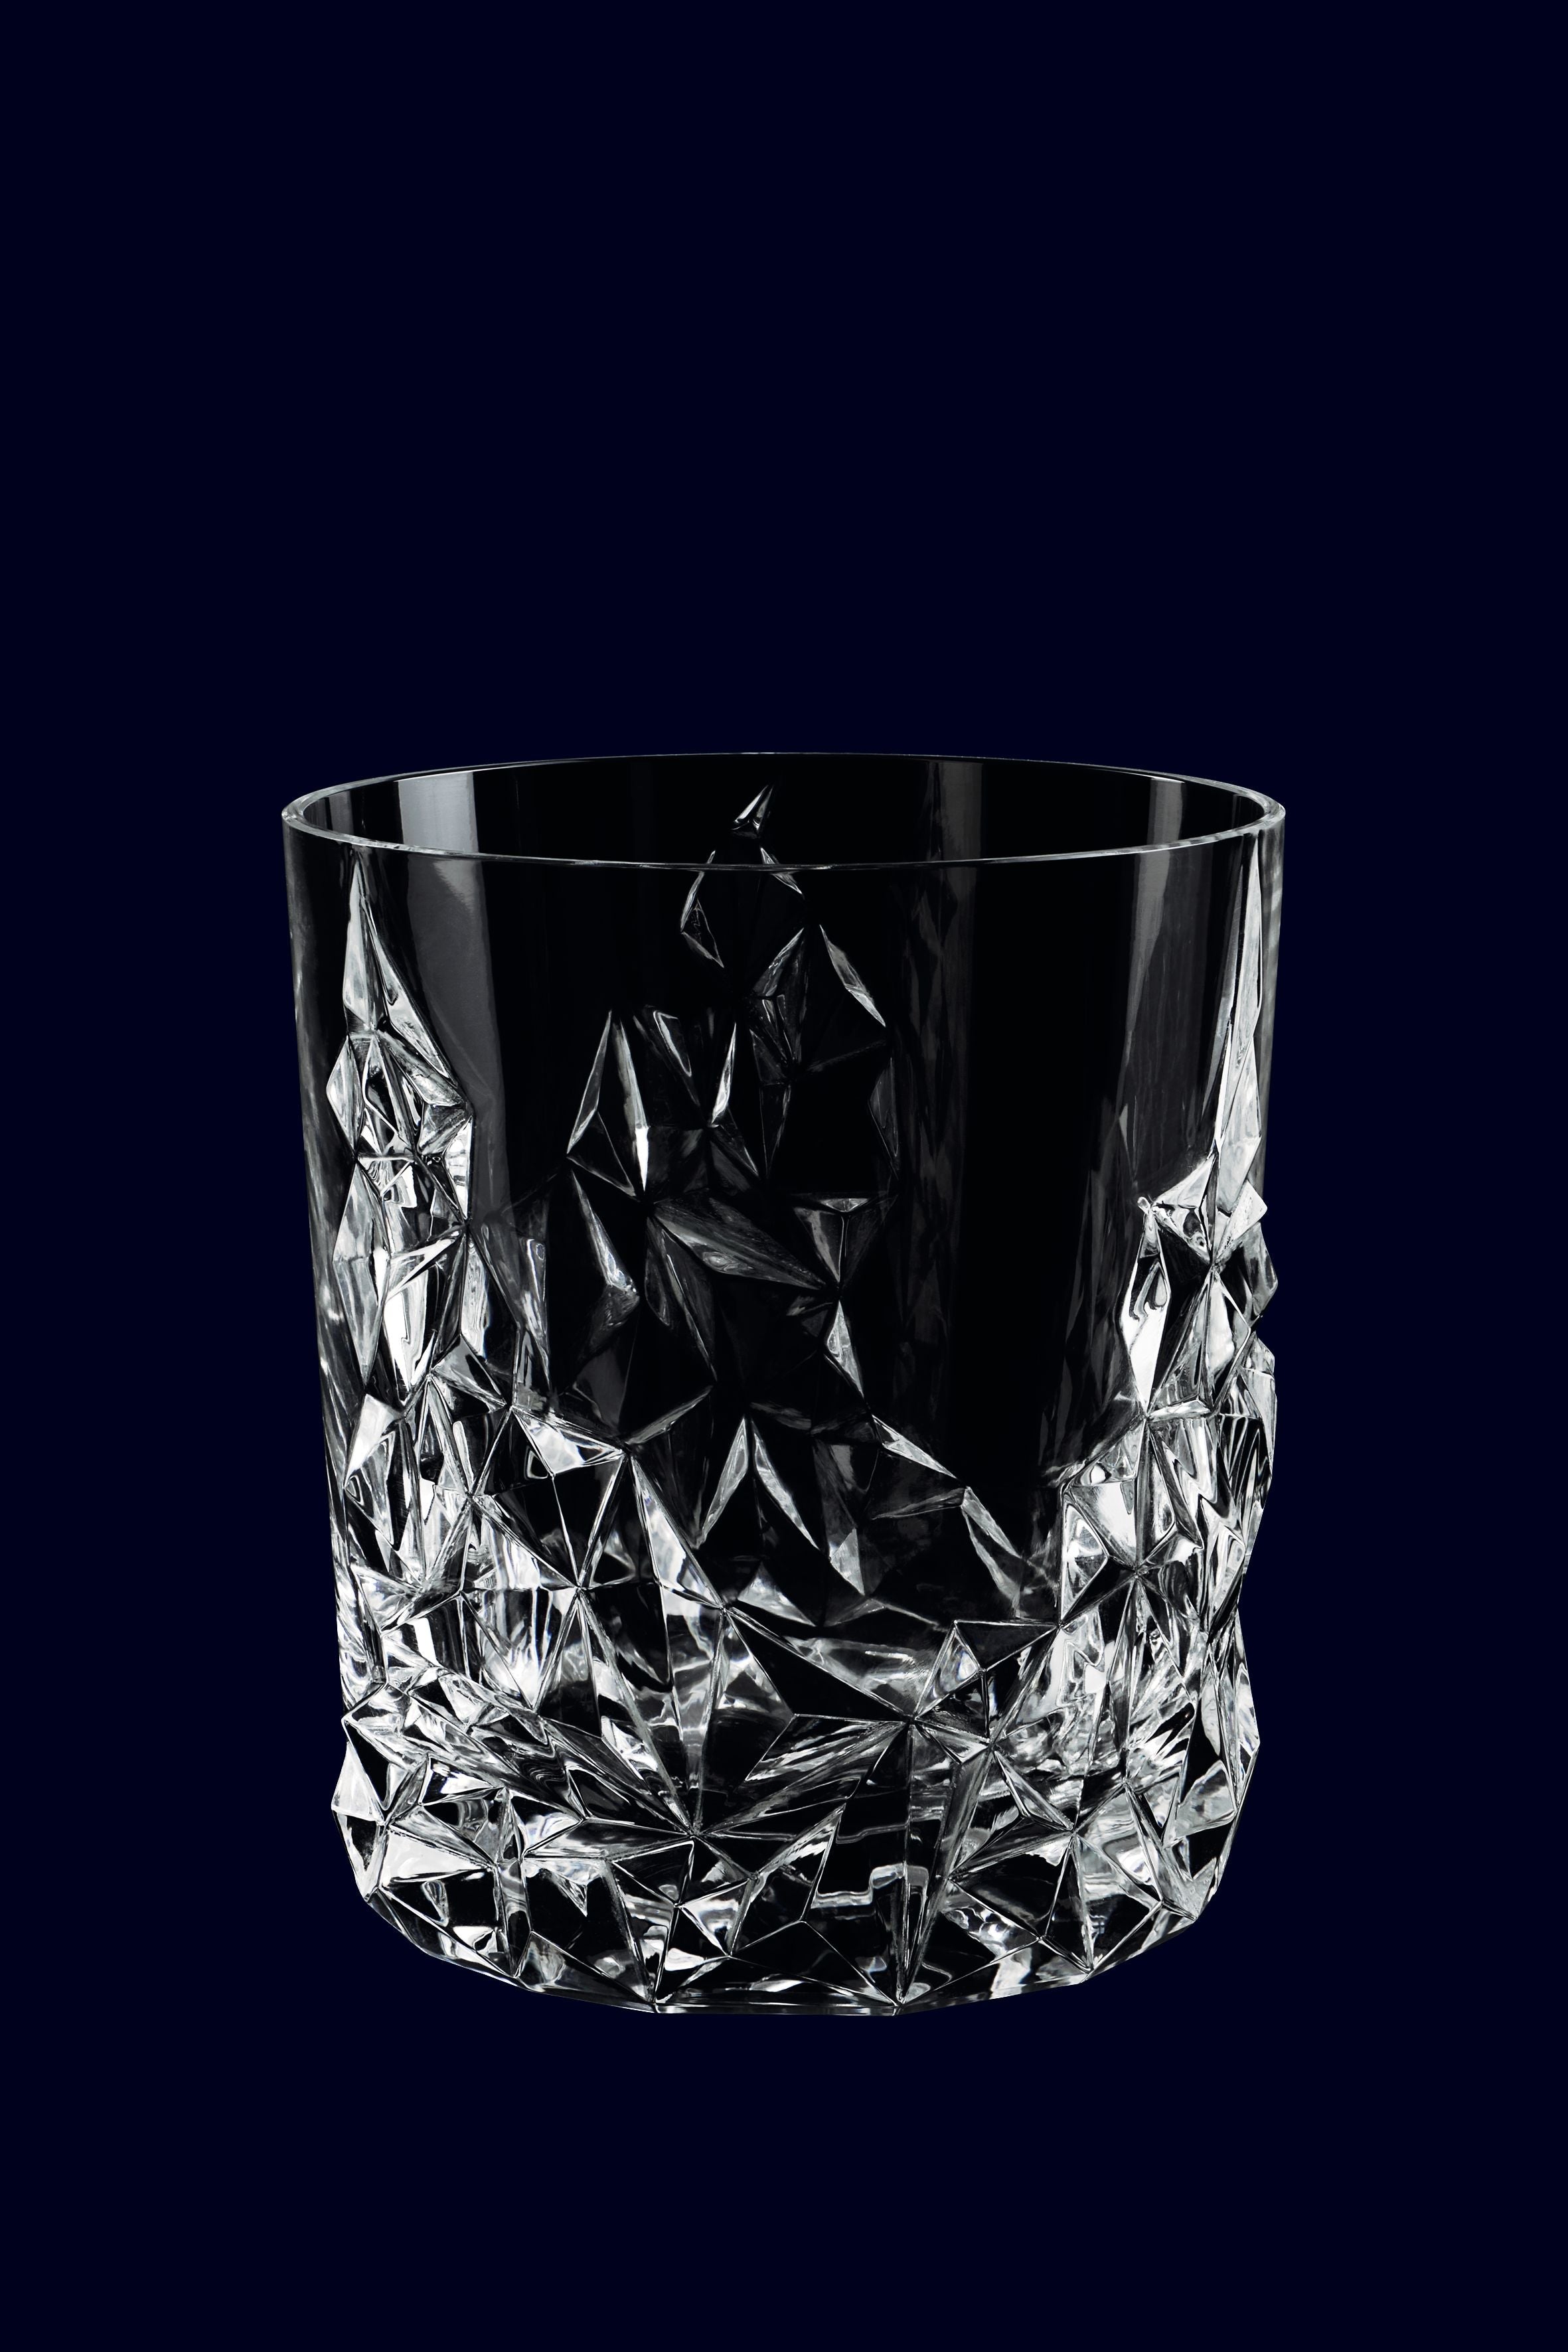 Nachtmann Sculpture Whisky Glass 365 ml, juego de 4